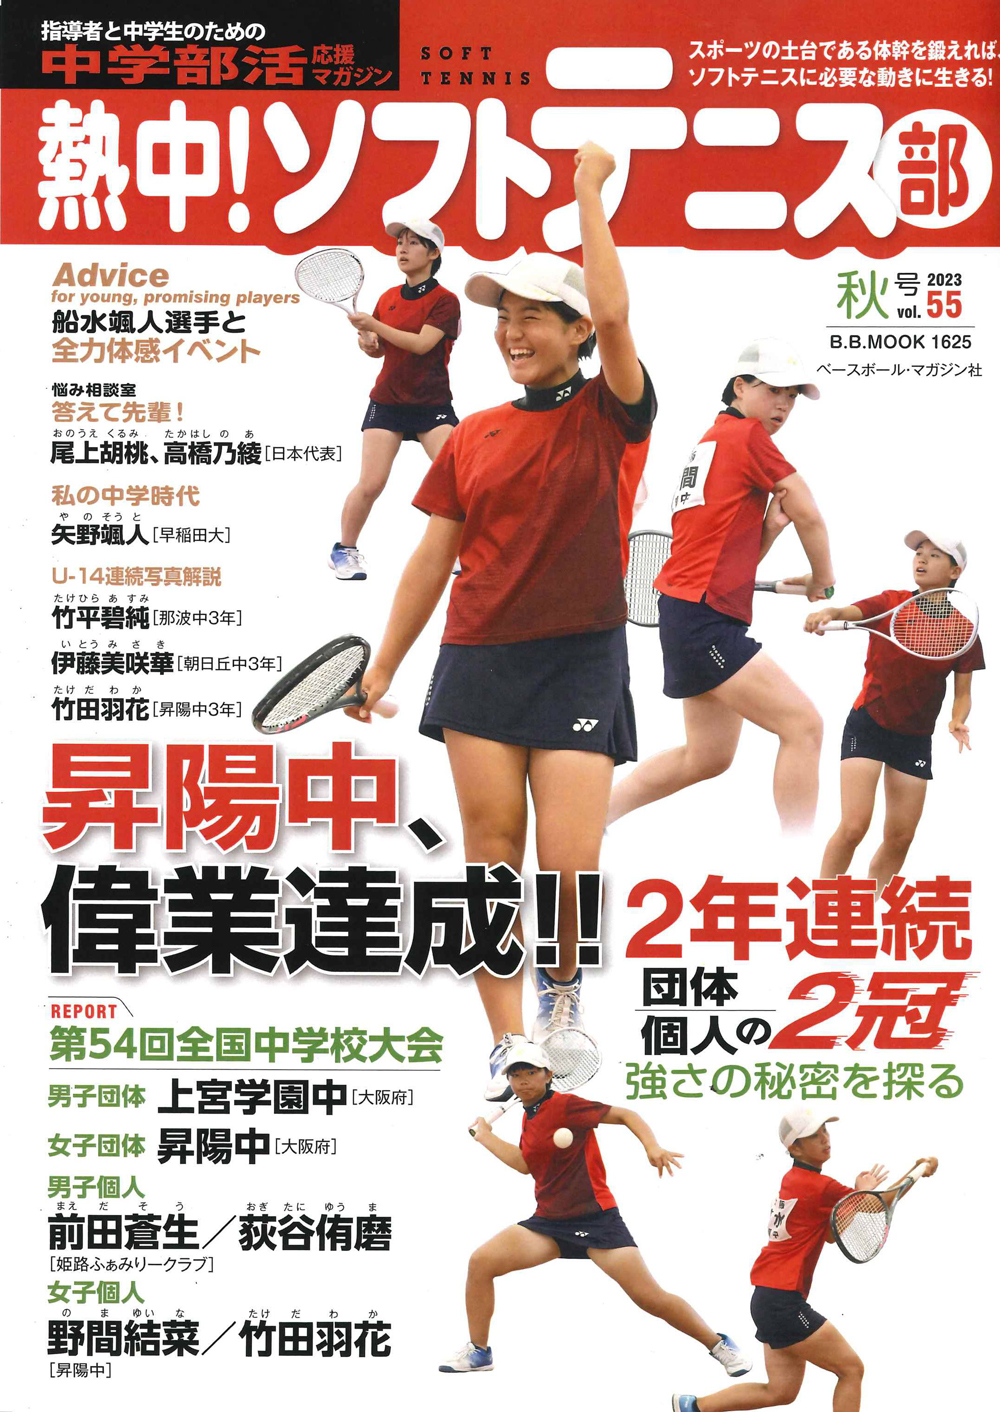 熱中!ソフトテニス部Vol.54